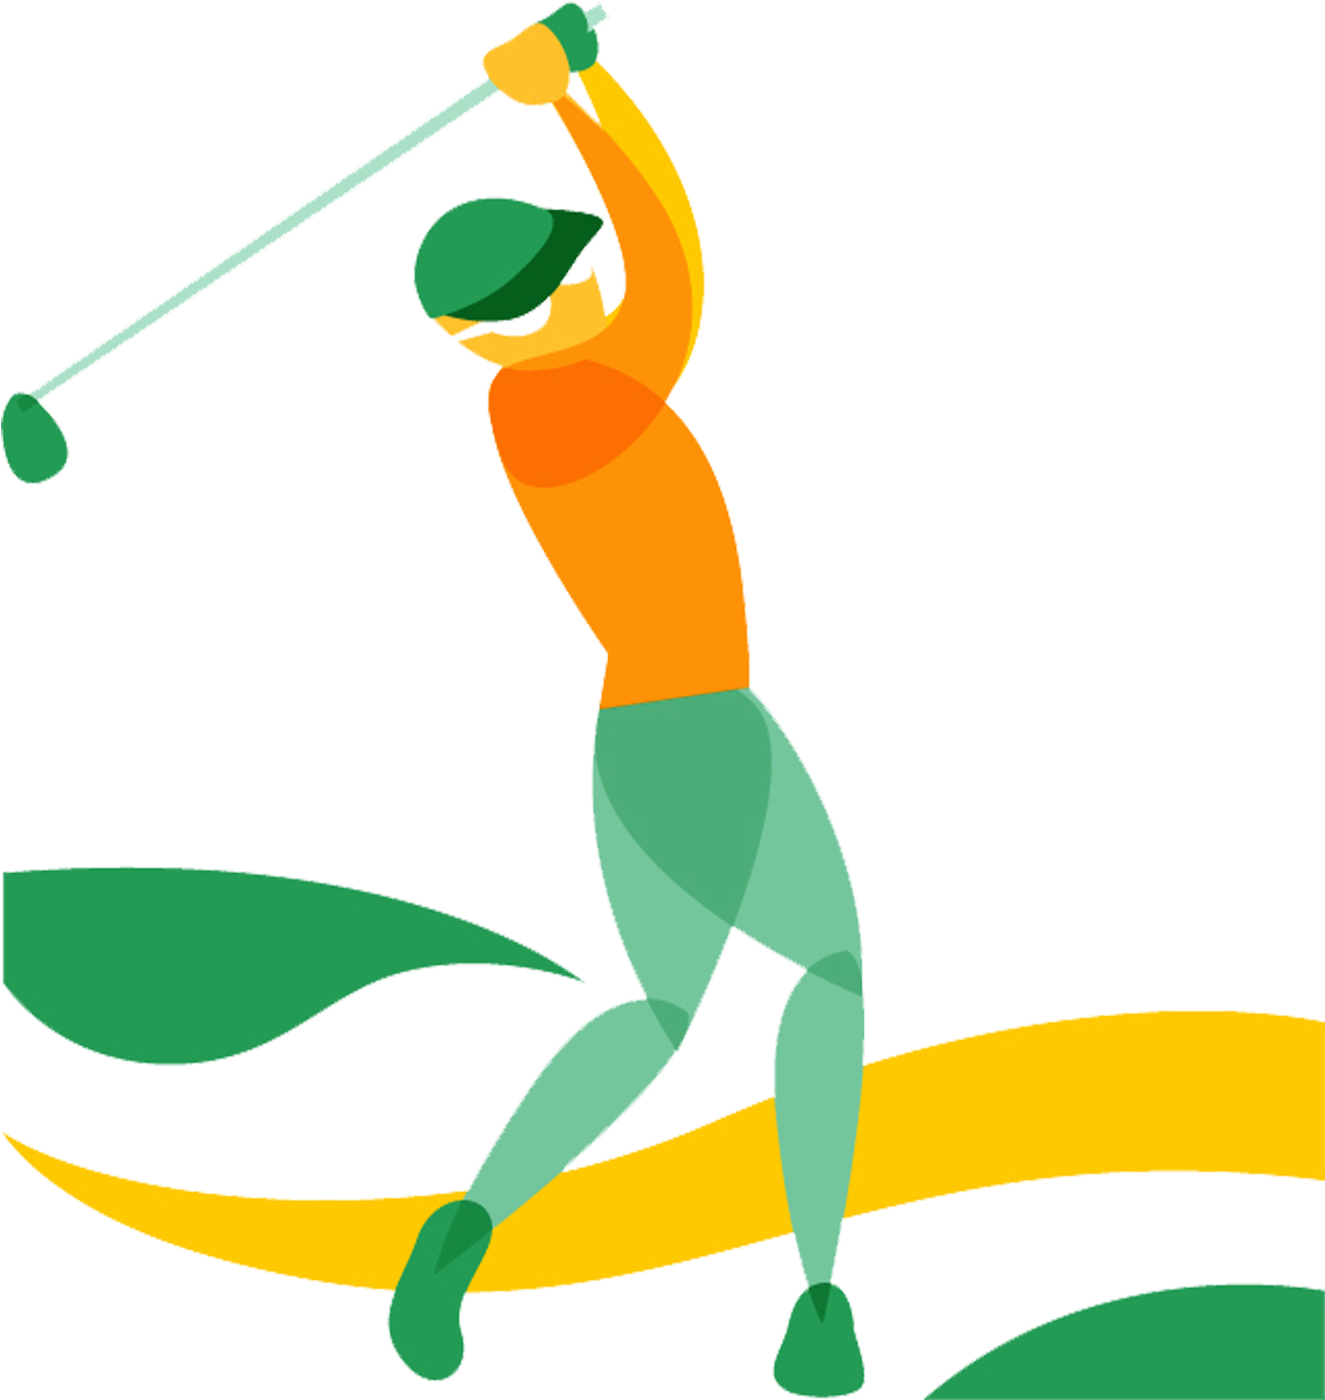 Golf Course Sport Golf Ball Tee - Golf Course Sport Golf Ball Tee (2362x2362)